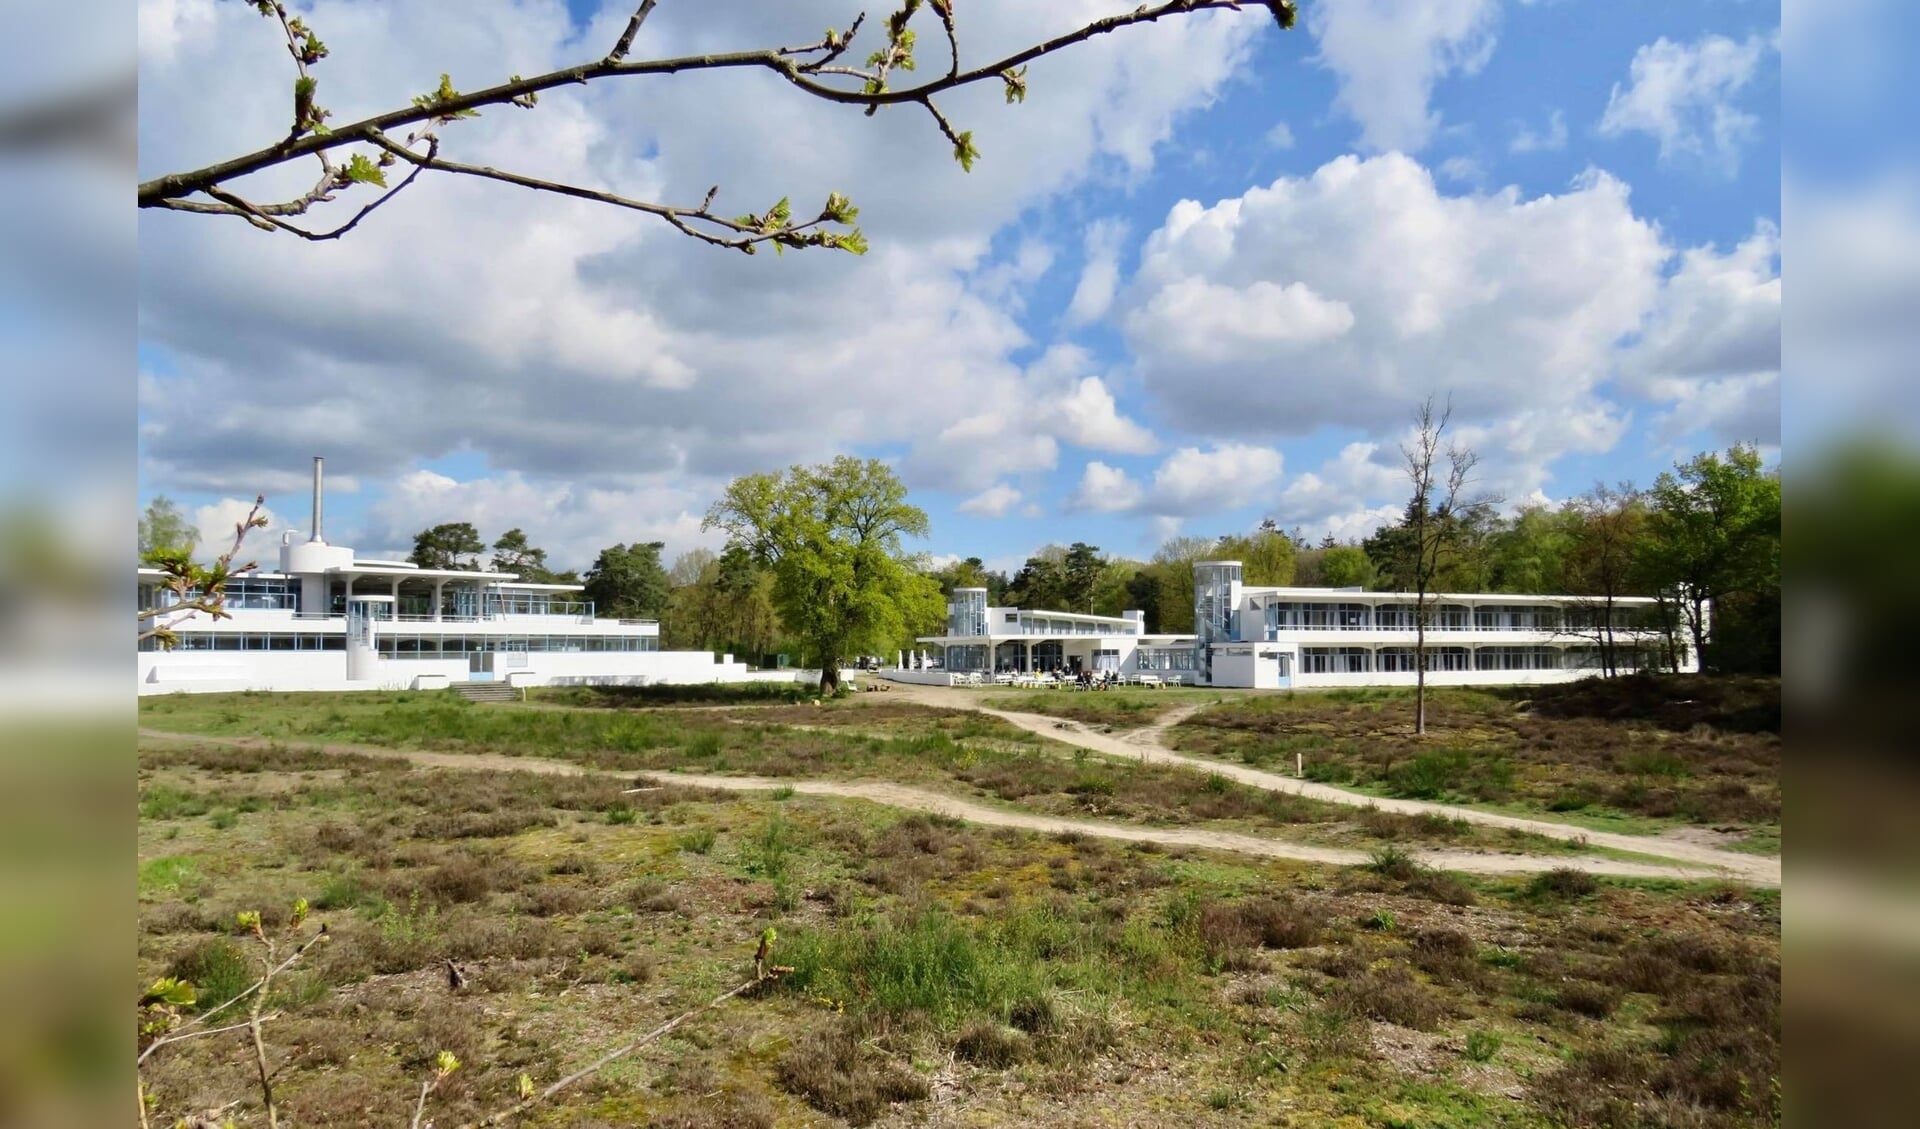 Voormalig Sanatorium/Ziekenhuis Zonnestraal  (1928-o.a. Architect Jan Duiker)